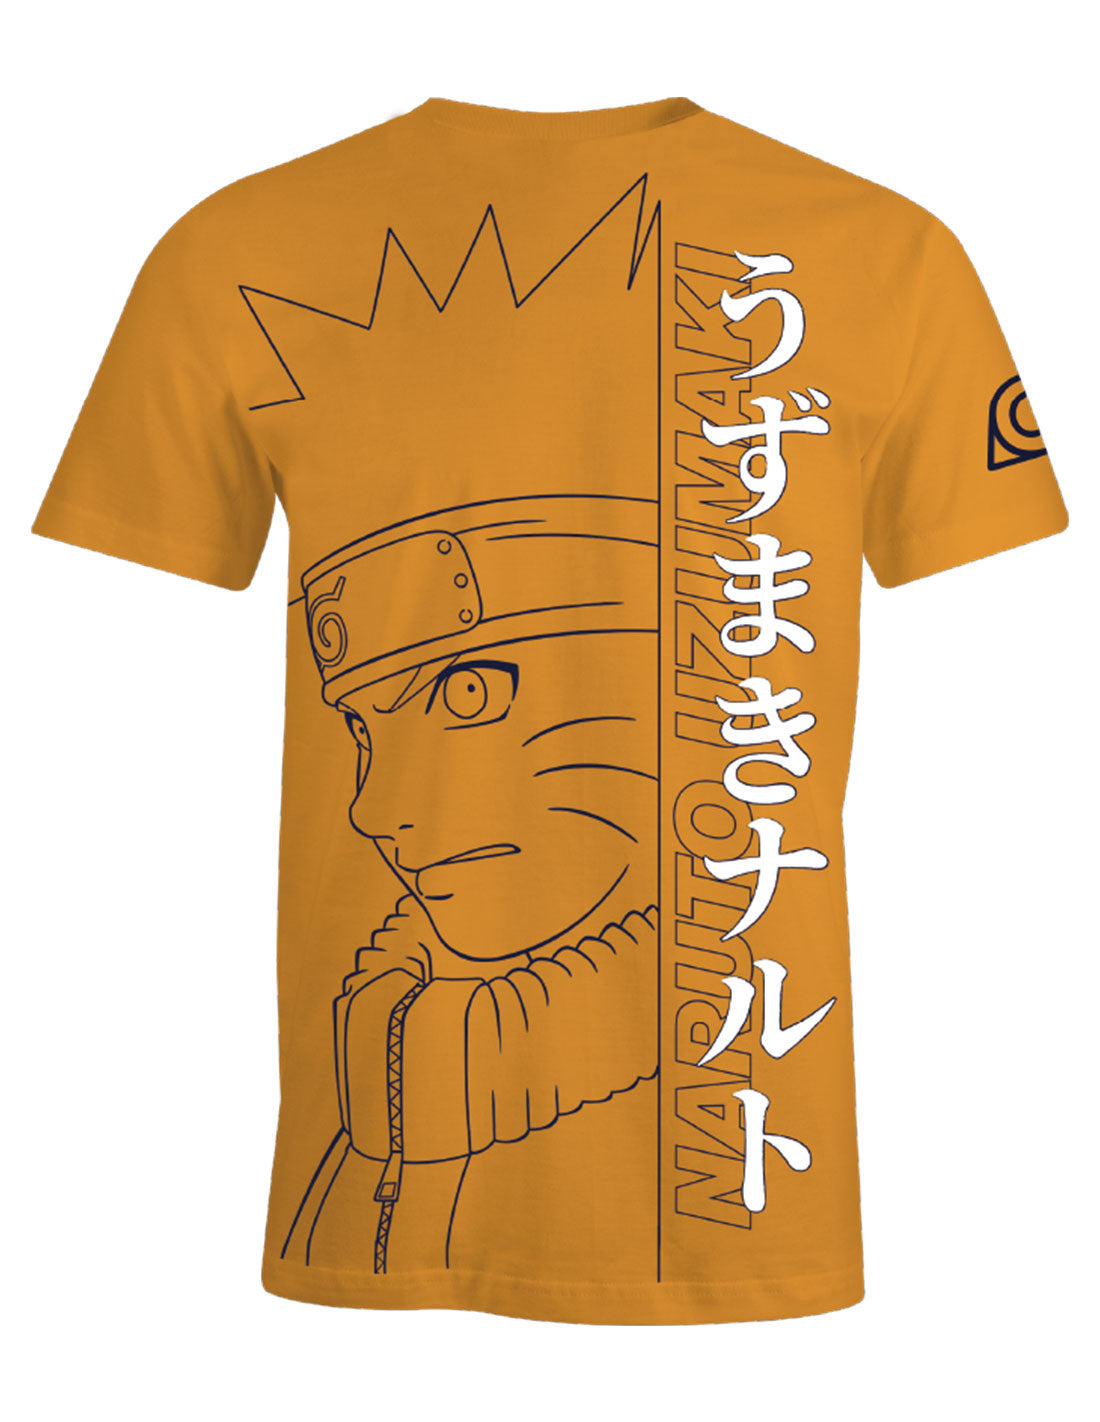 Naruto T-shirt - Naruto Values